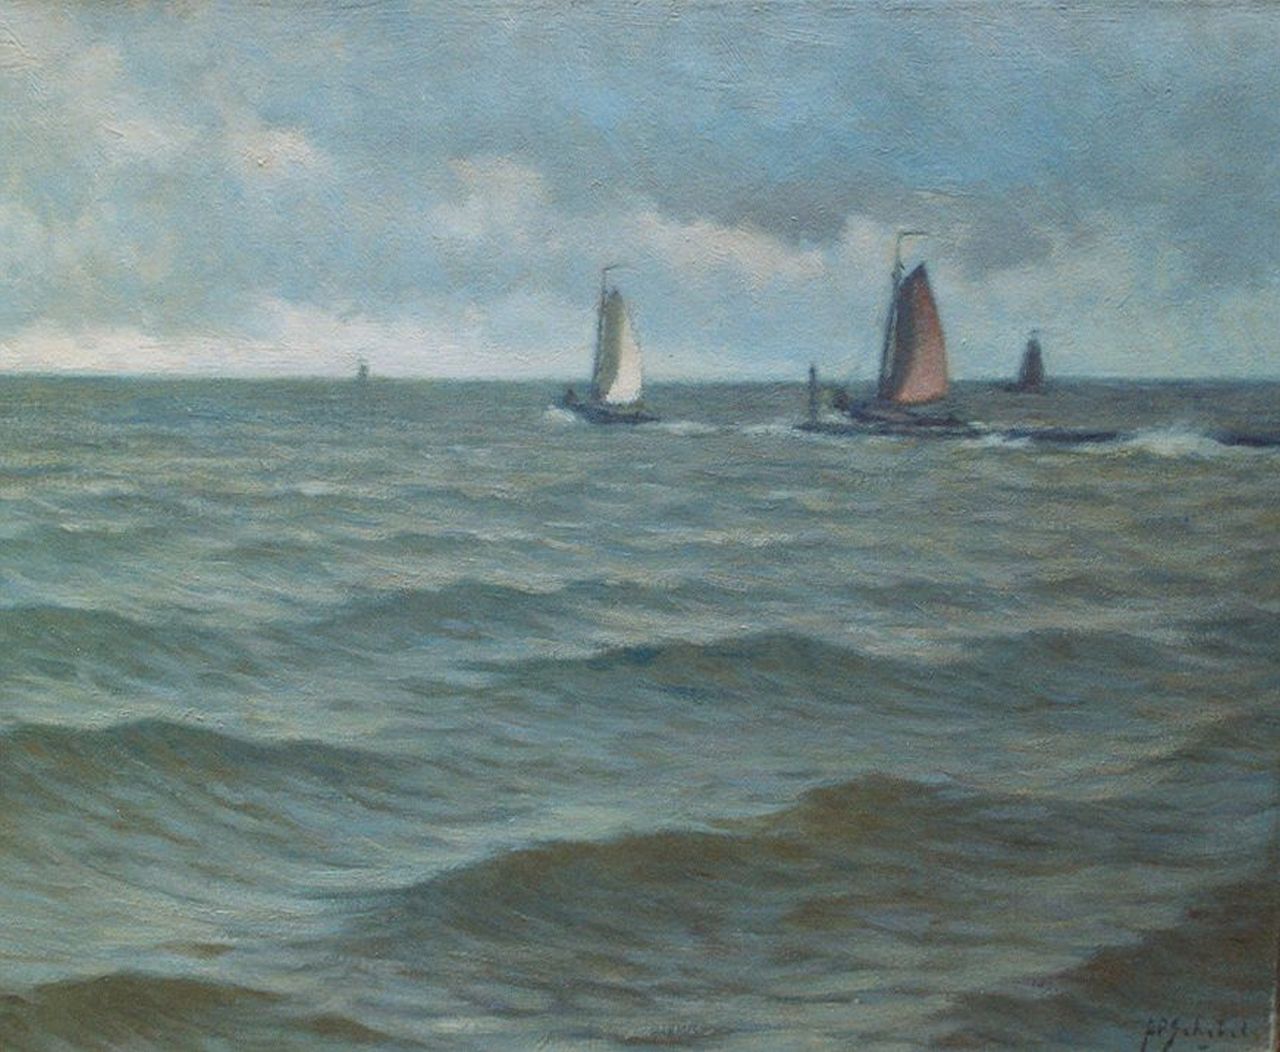 Schotel A.P.  | Anthonie Pieter Schotel, Setting sail, Enkhuizen, Öl auf Leinwand 40,5 x 50,3 cm, signed l.r.